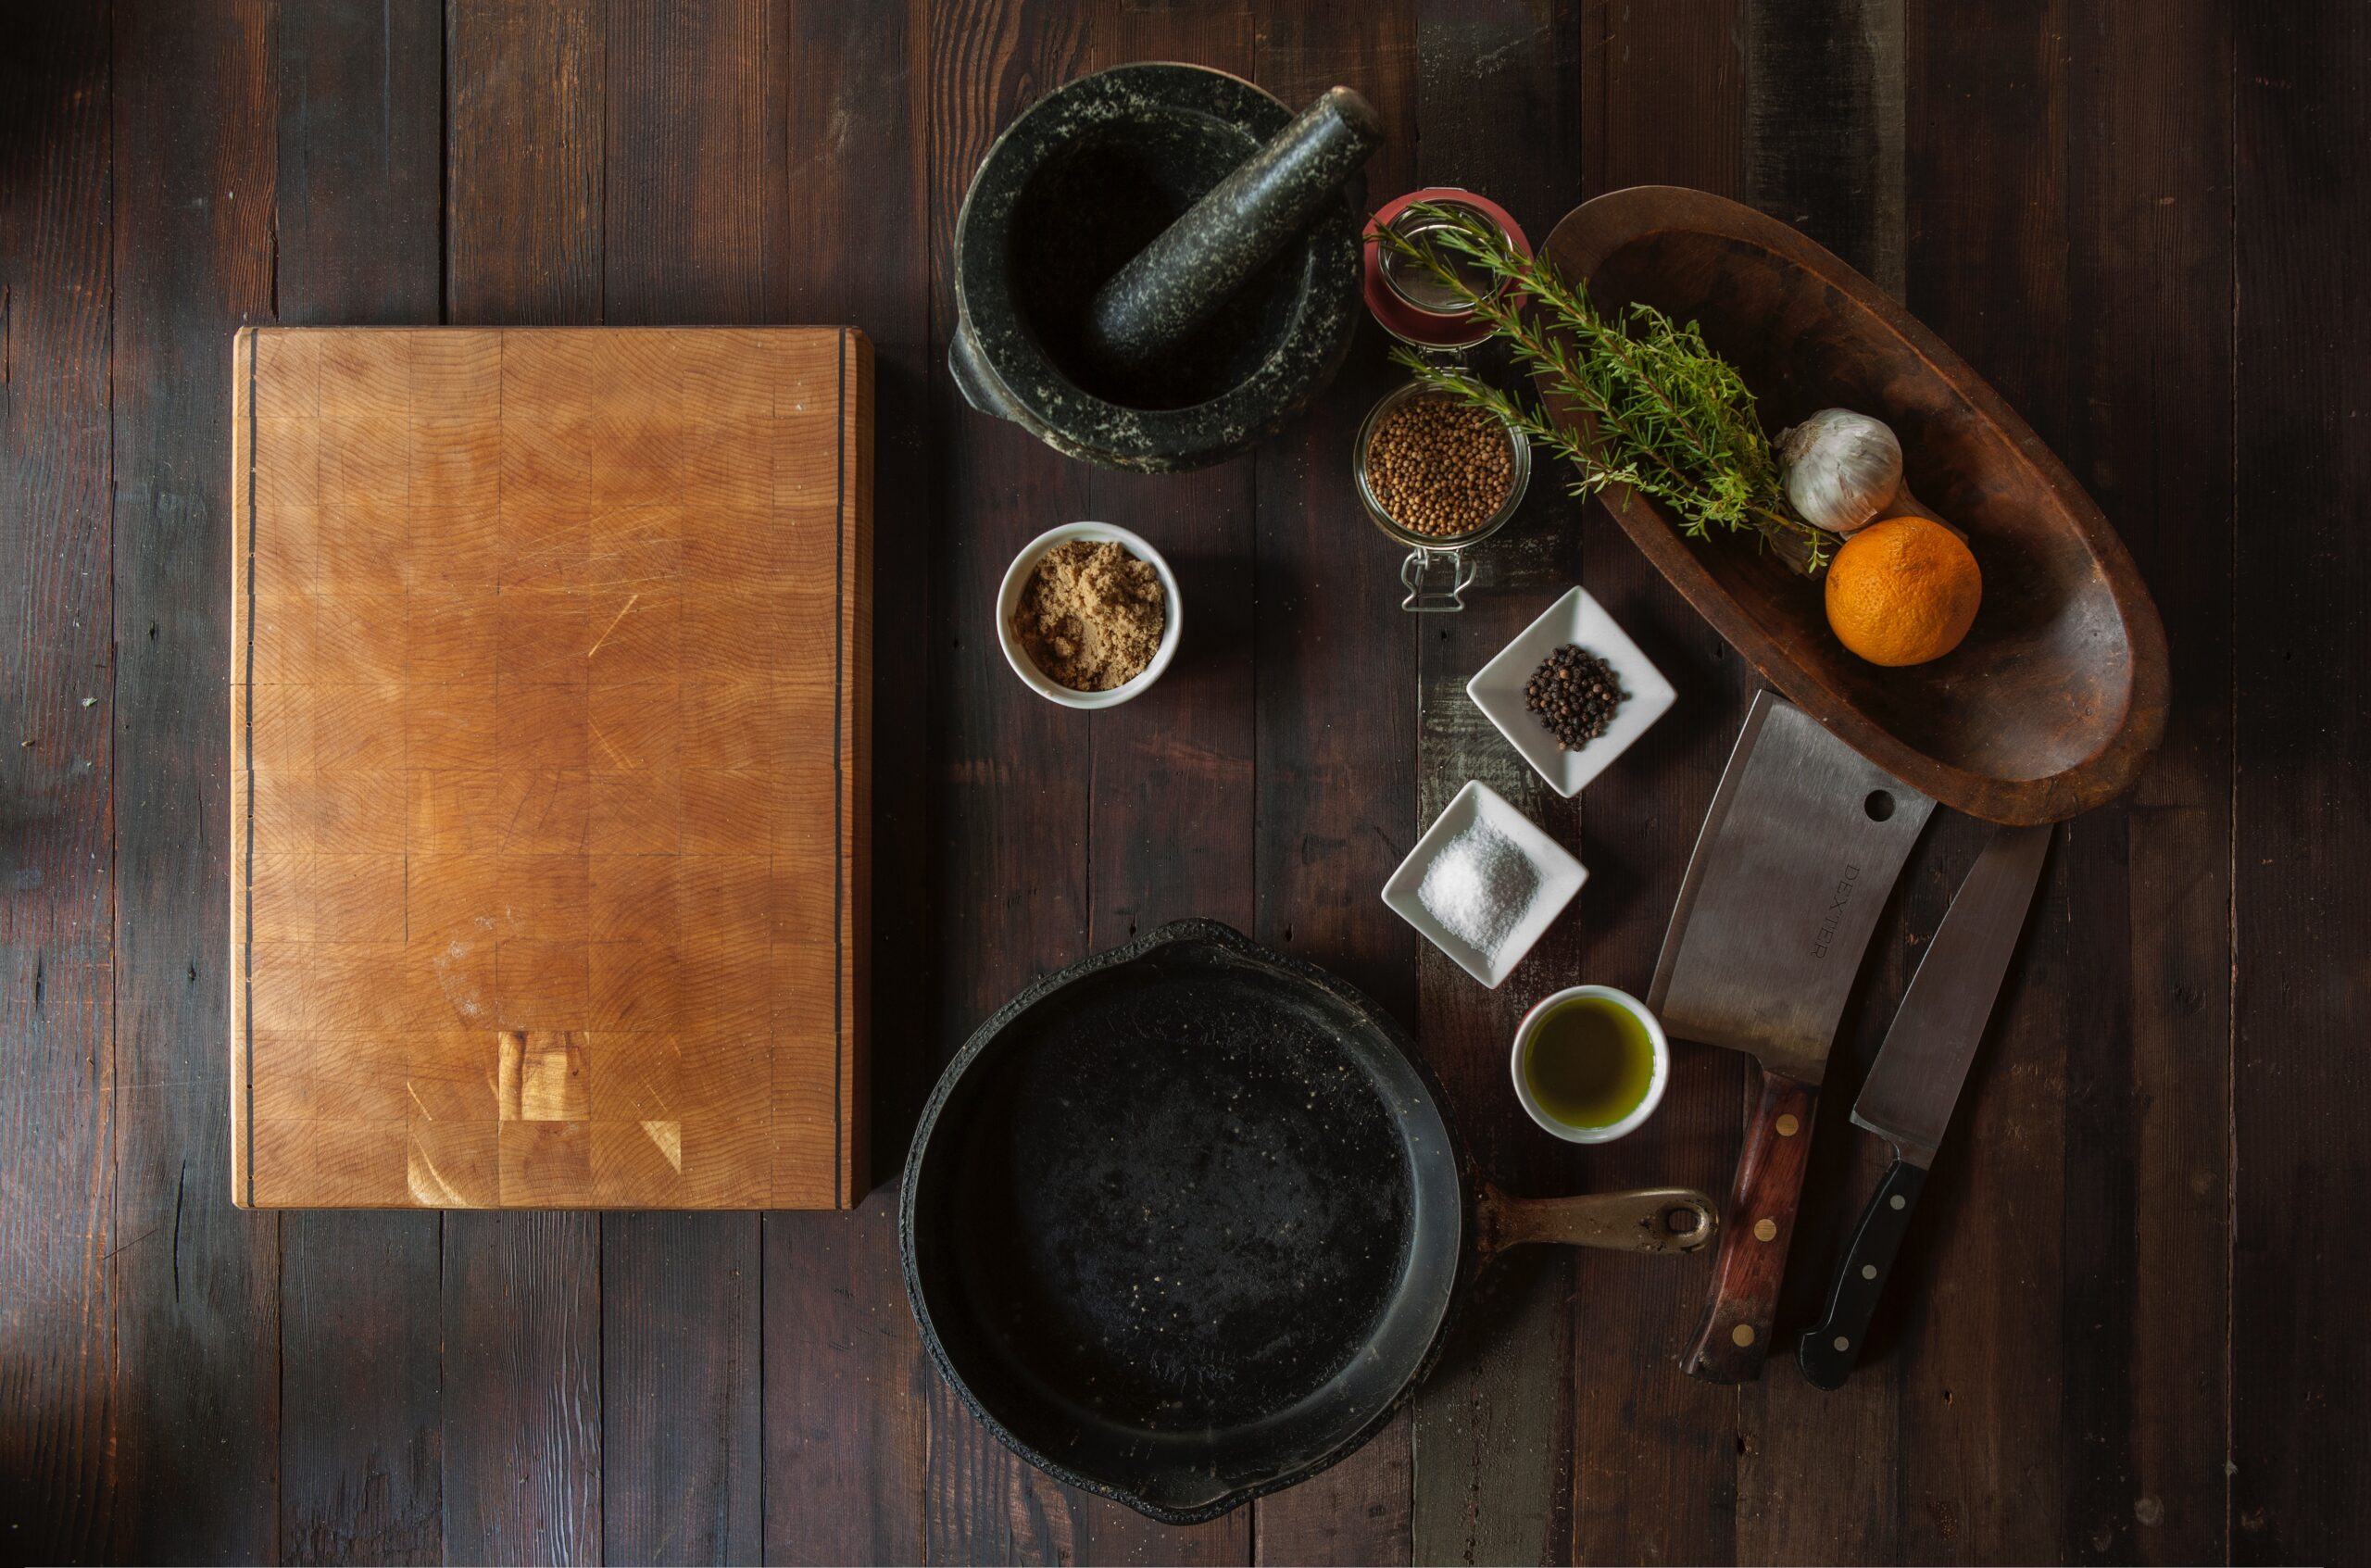 Plano cenital de una mesa de madera con ingredientes para una receta de setas con queso de cabra y jamón ibérico: cuchillos, cuenco con cebolla y romero, mortero, especias, y una sartén